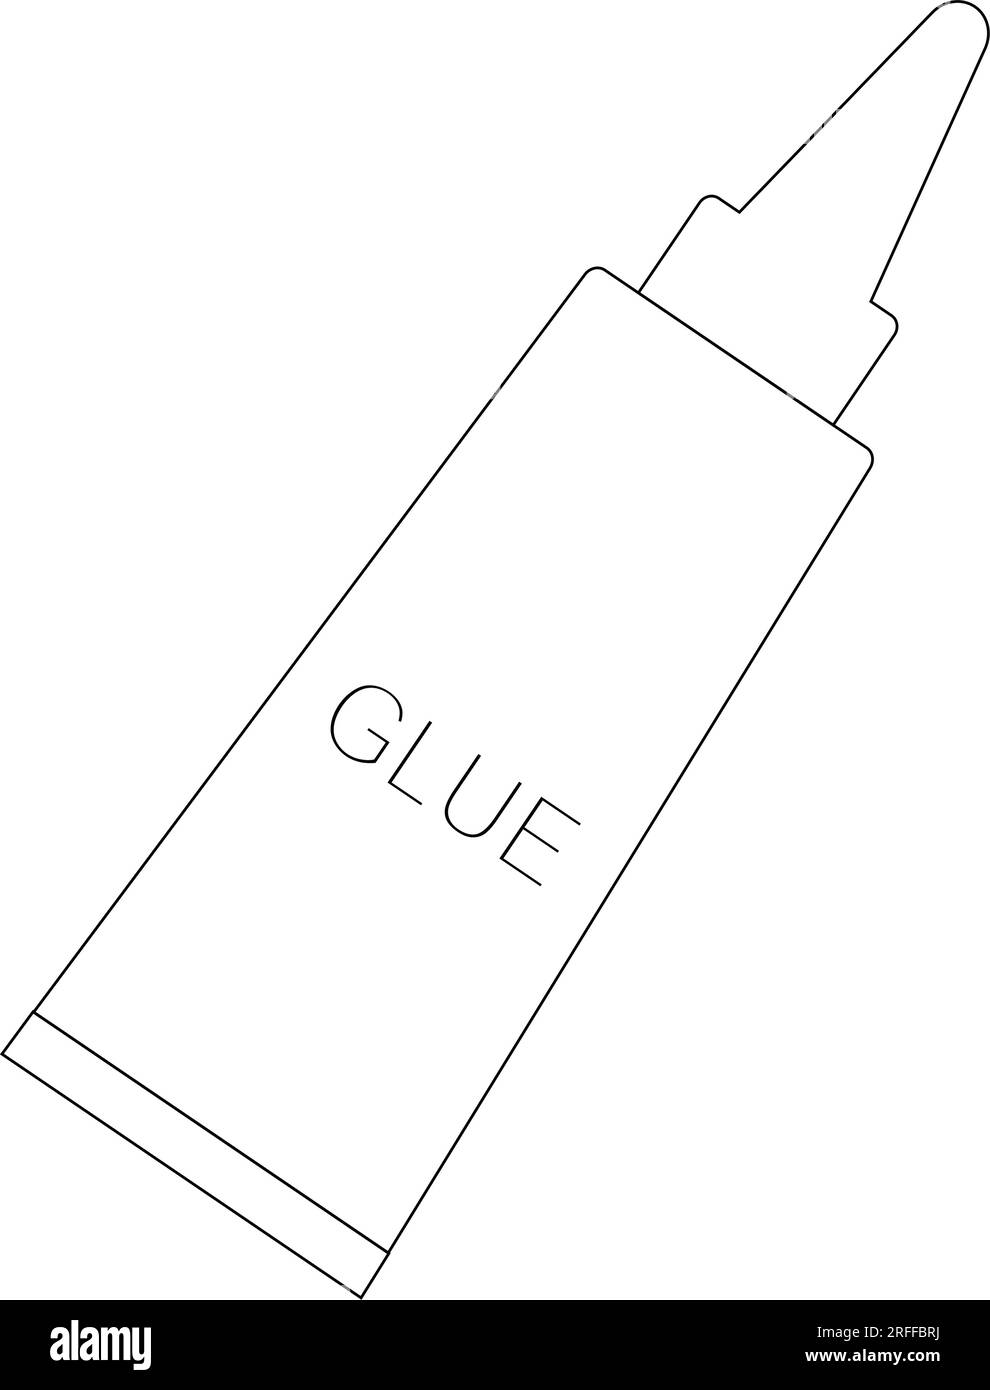 glue icon vector illustration design Stock Vector